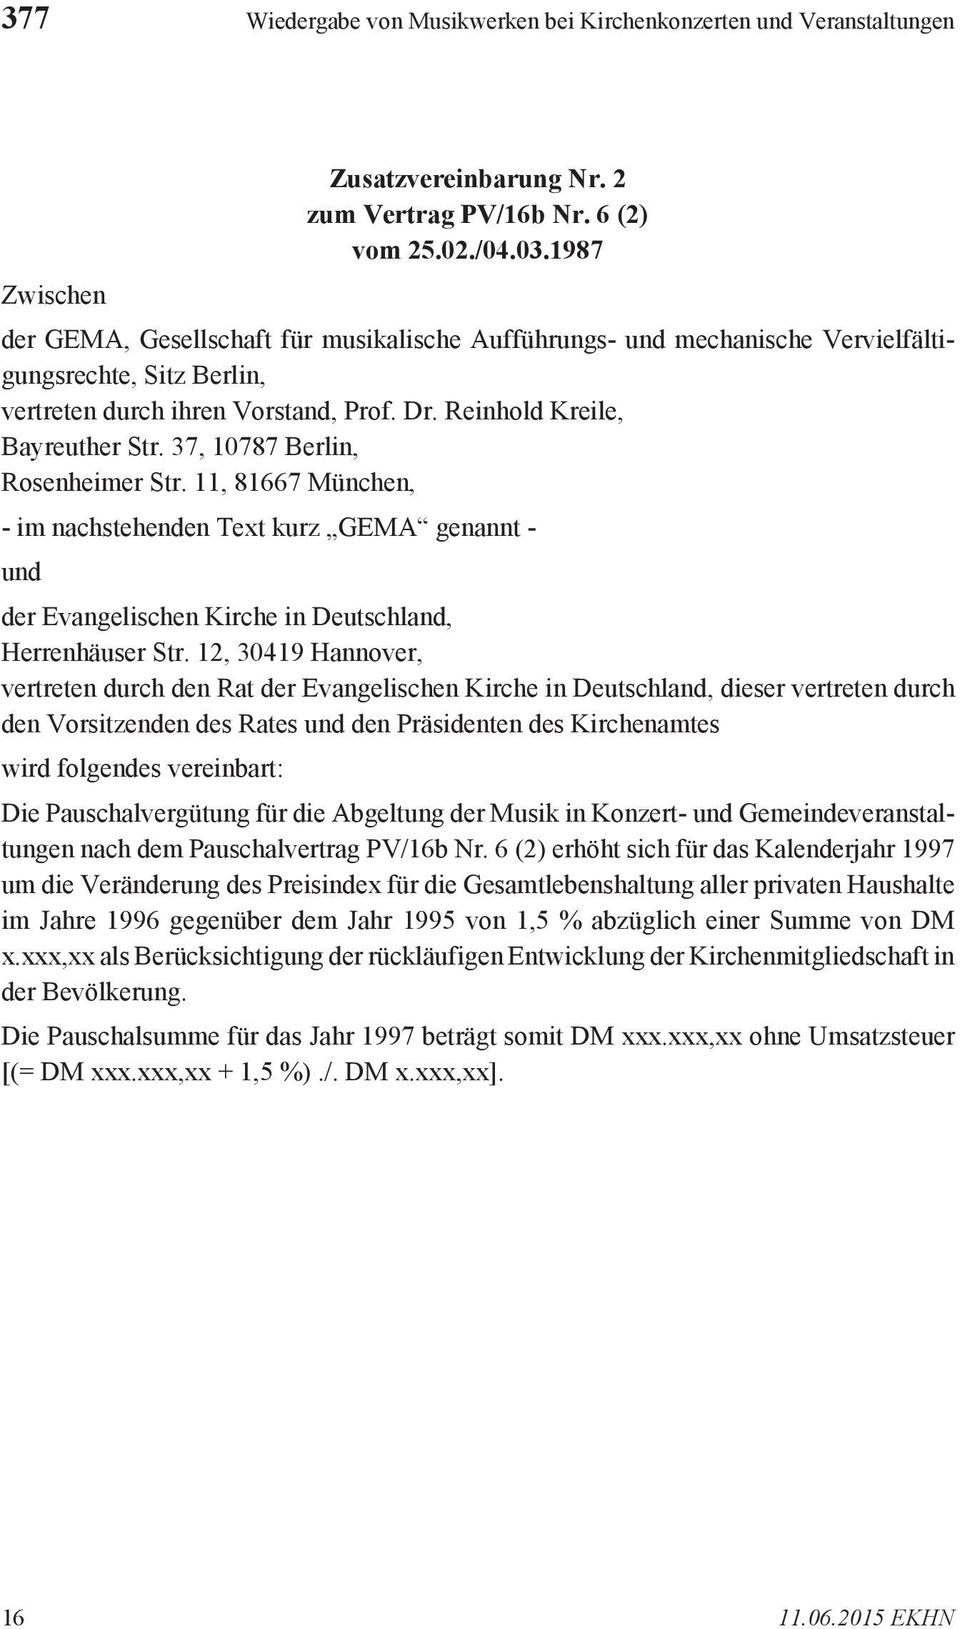 37, 10787 Berlin, Rosenheimer Str. 11, 81667 München, - im nachstehenden Text kurz GEMA genannt - und der Evangelischen Kirche in Deutschland, Herrenhäuser Str.